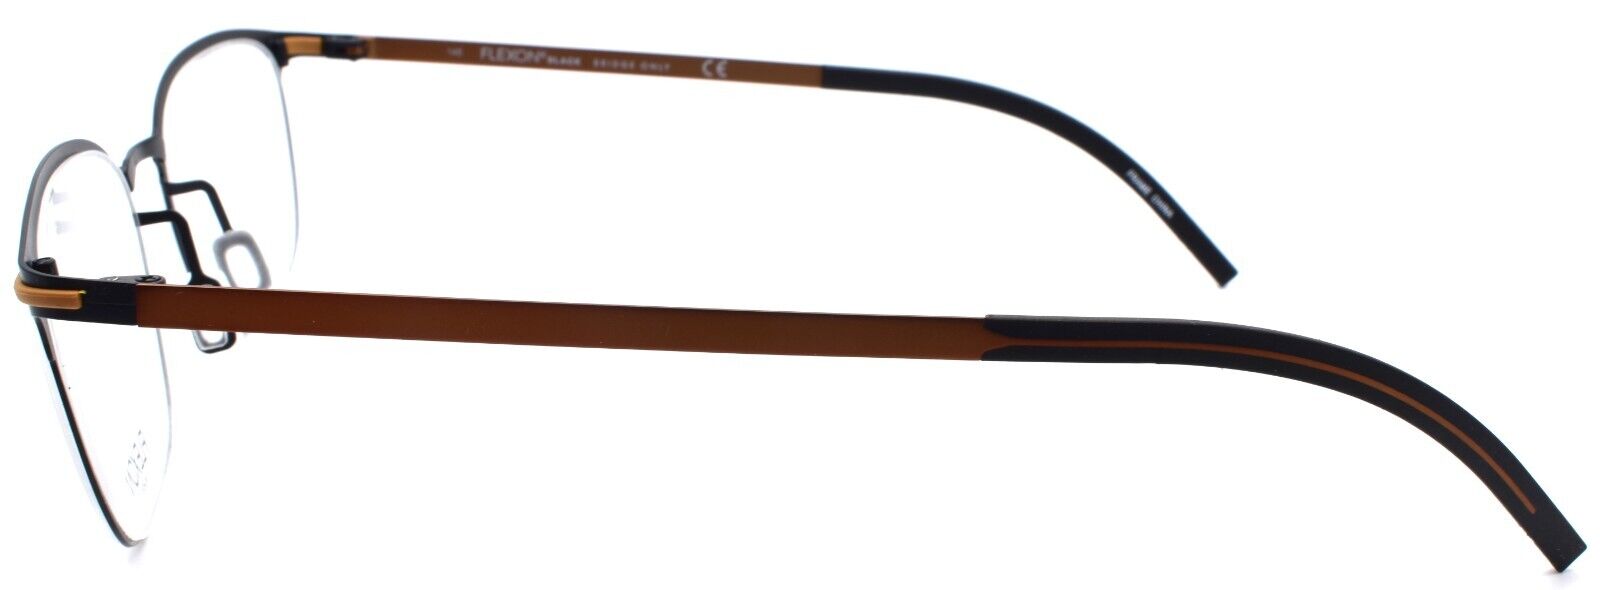 3-Flexon B2007 002 Men's Eyeglasses Black 50-19-145 Flexible Titanium-883900206716-IKSpecs